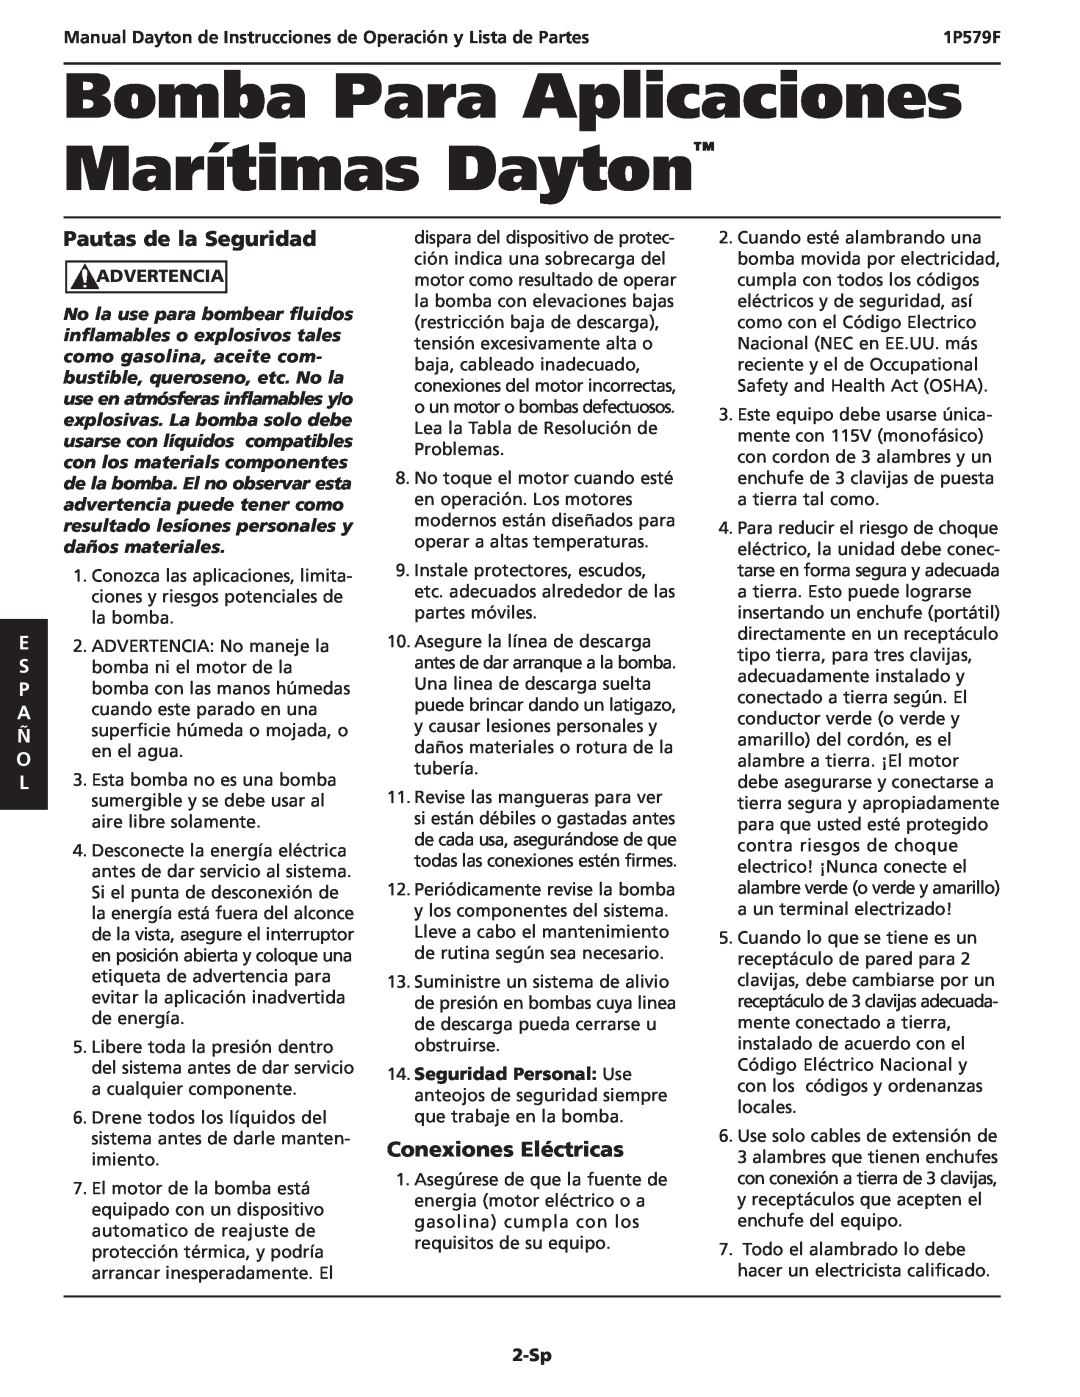 Dayton 1P579F Pautas de la Seguridad, Conexiones Eléctricas, Manual Dayton de Instrucciones de Operación y Lista de Partes 